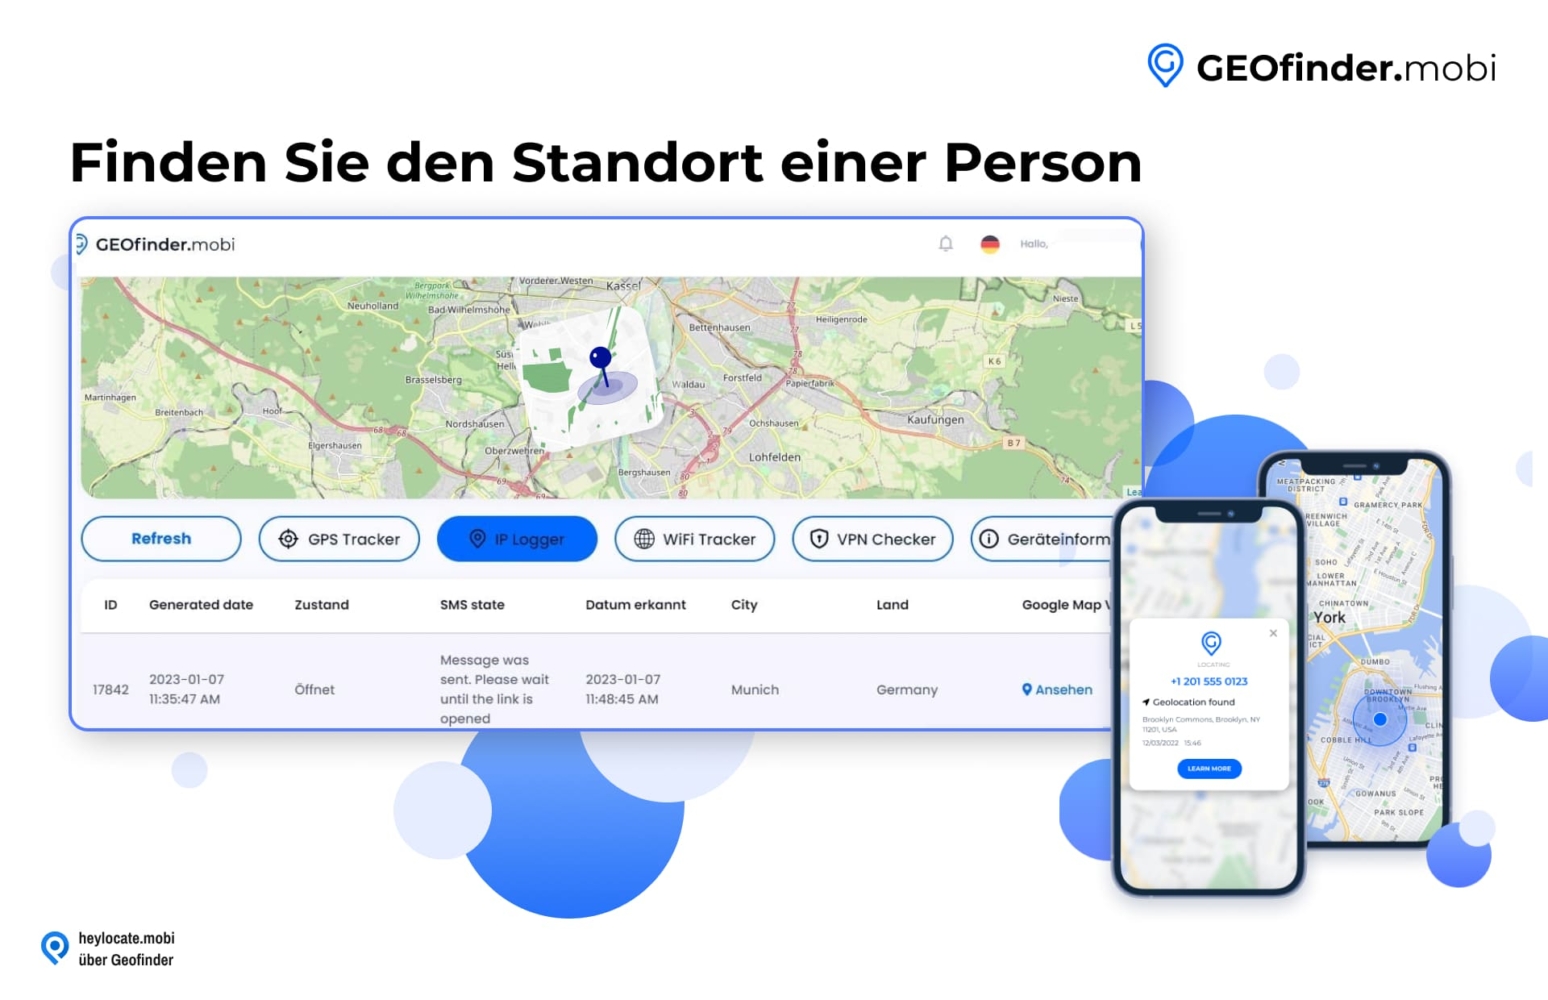 Screenshot der GEOfinder.mobi-Webseite mit einer Karte, auf der ein Standort eingezeichnet ist, und einer Benutzeroberfläche mit Optionen für GPS-Ortung, IP-Protokollierung, WiFi-Ortung, VPN-Überprüfung und Geräteinformationen sowie einem Mobiltelefon, auf dem ein Standort eingezeichnet ist.